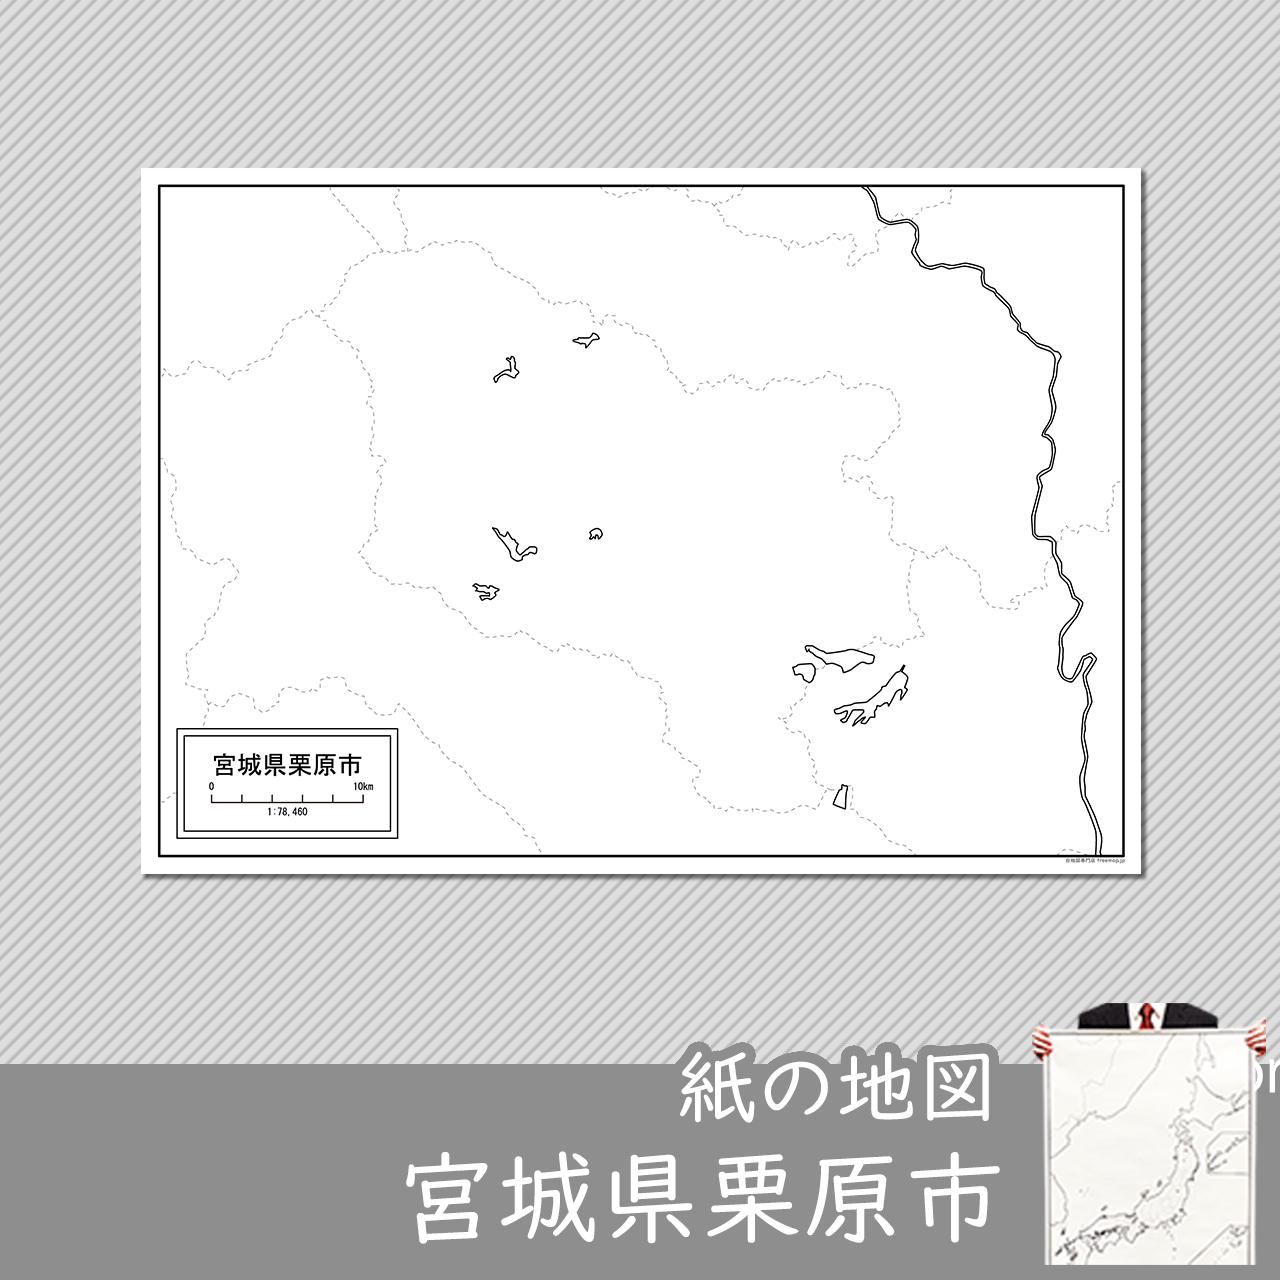 栗原市の紙の白地図のサムネイル